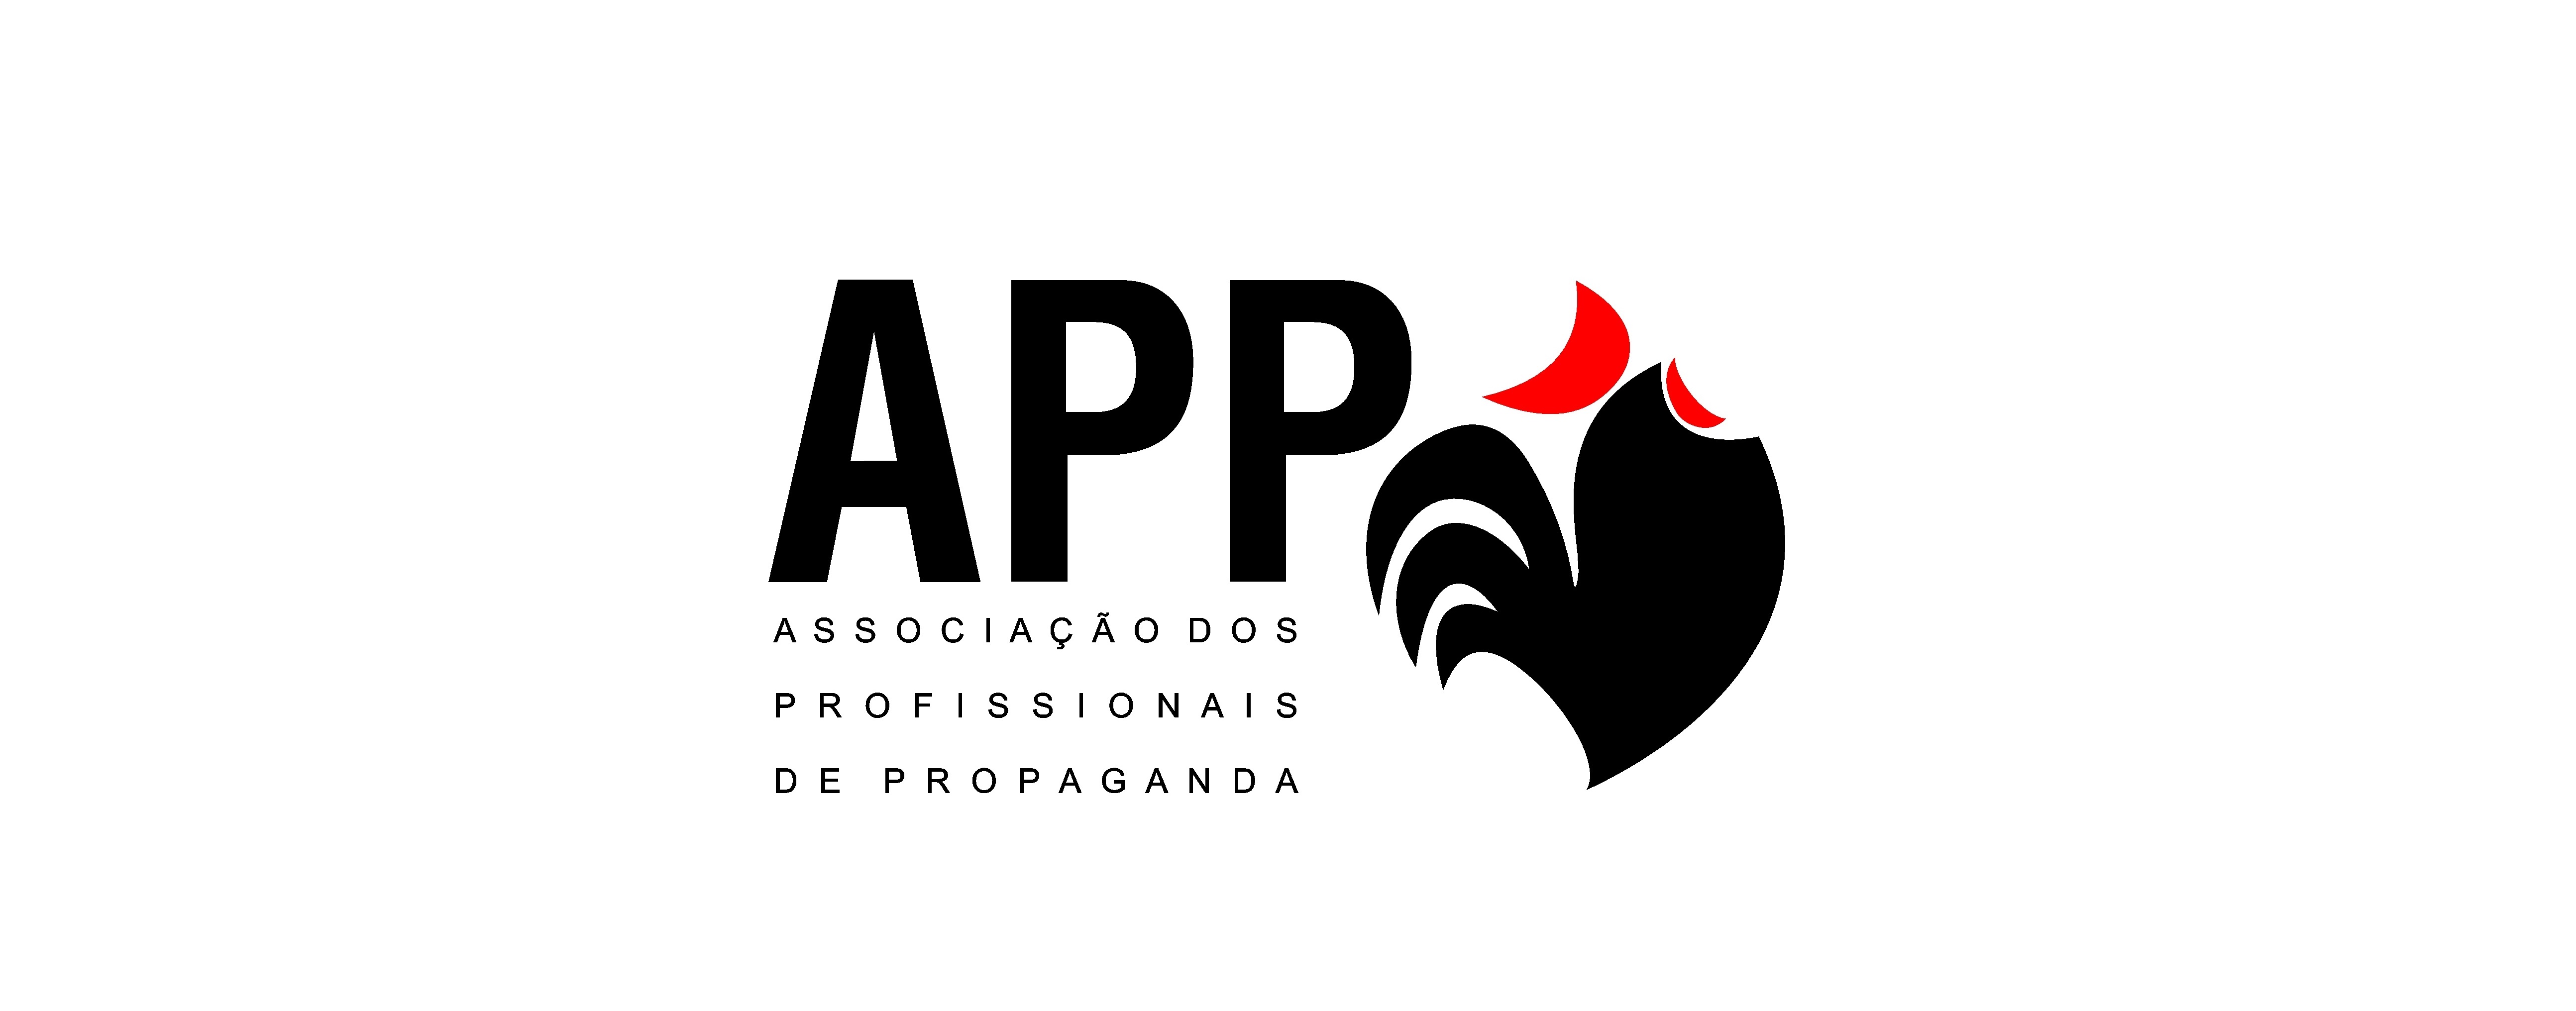 APP revela os vencedores do Prêmio Contribuição Profissional 2015